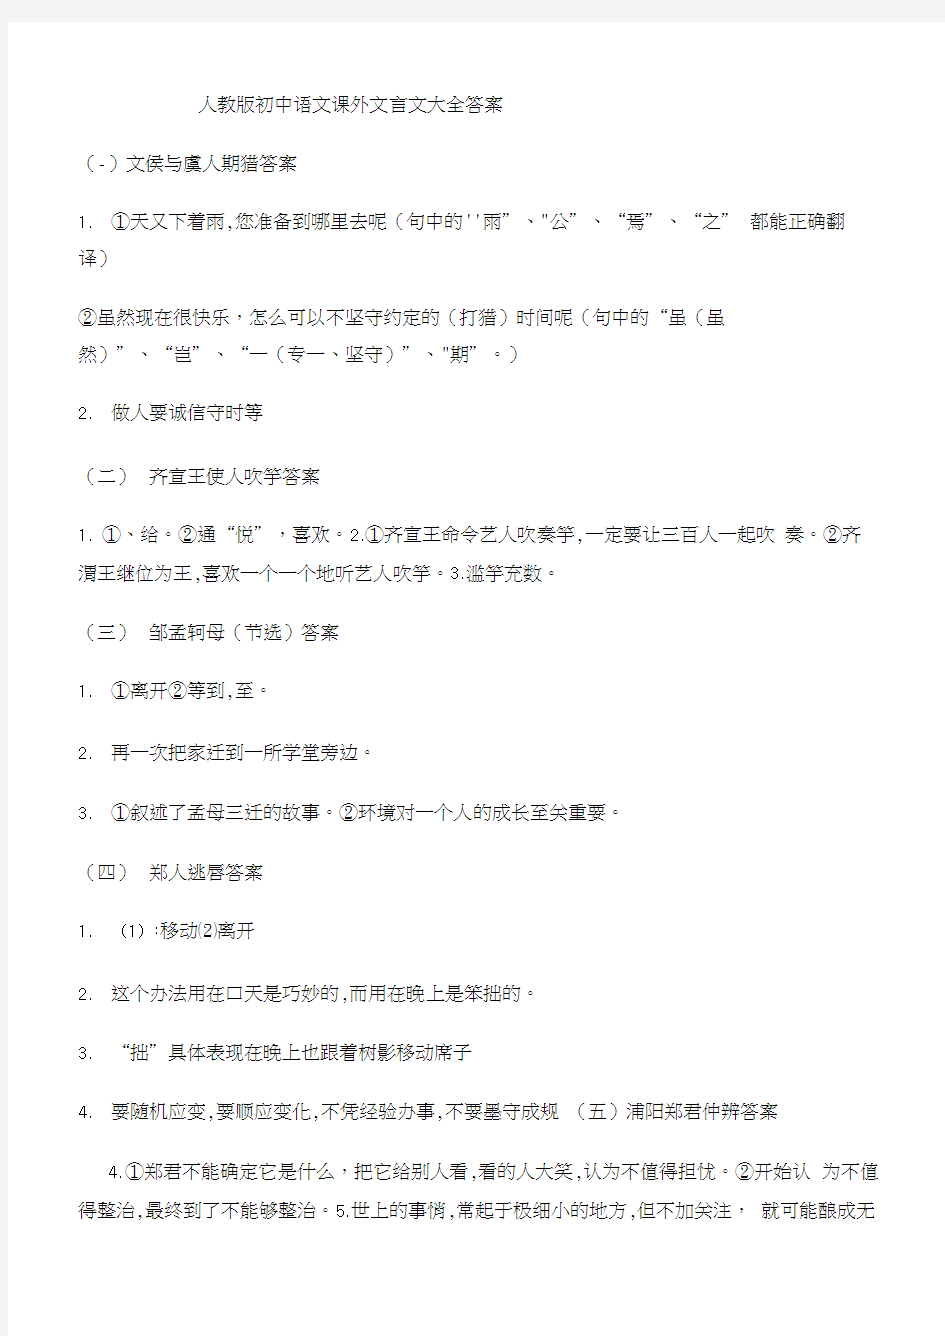 人教版初中语文课外文言文大全答案(20210111183915)